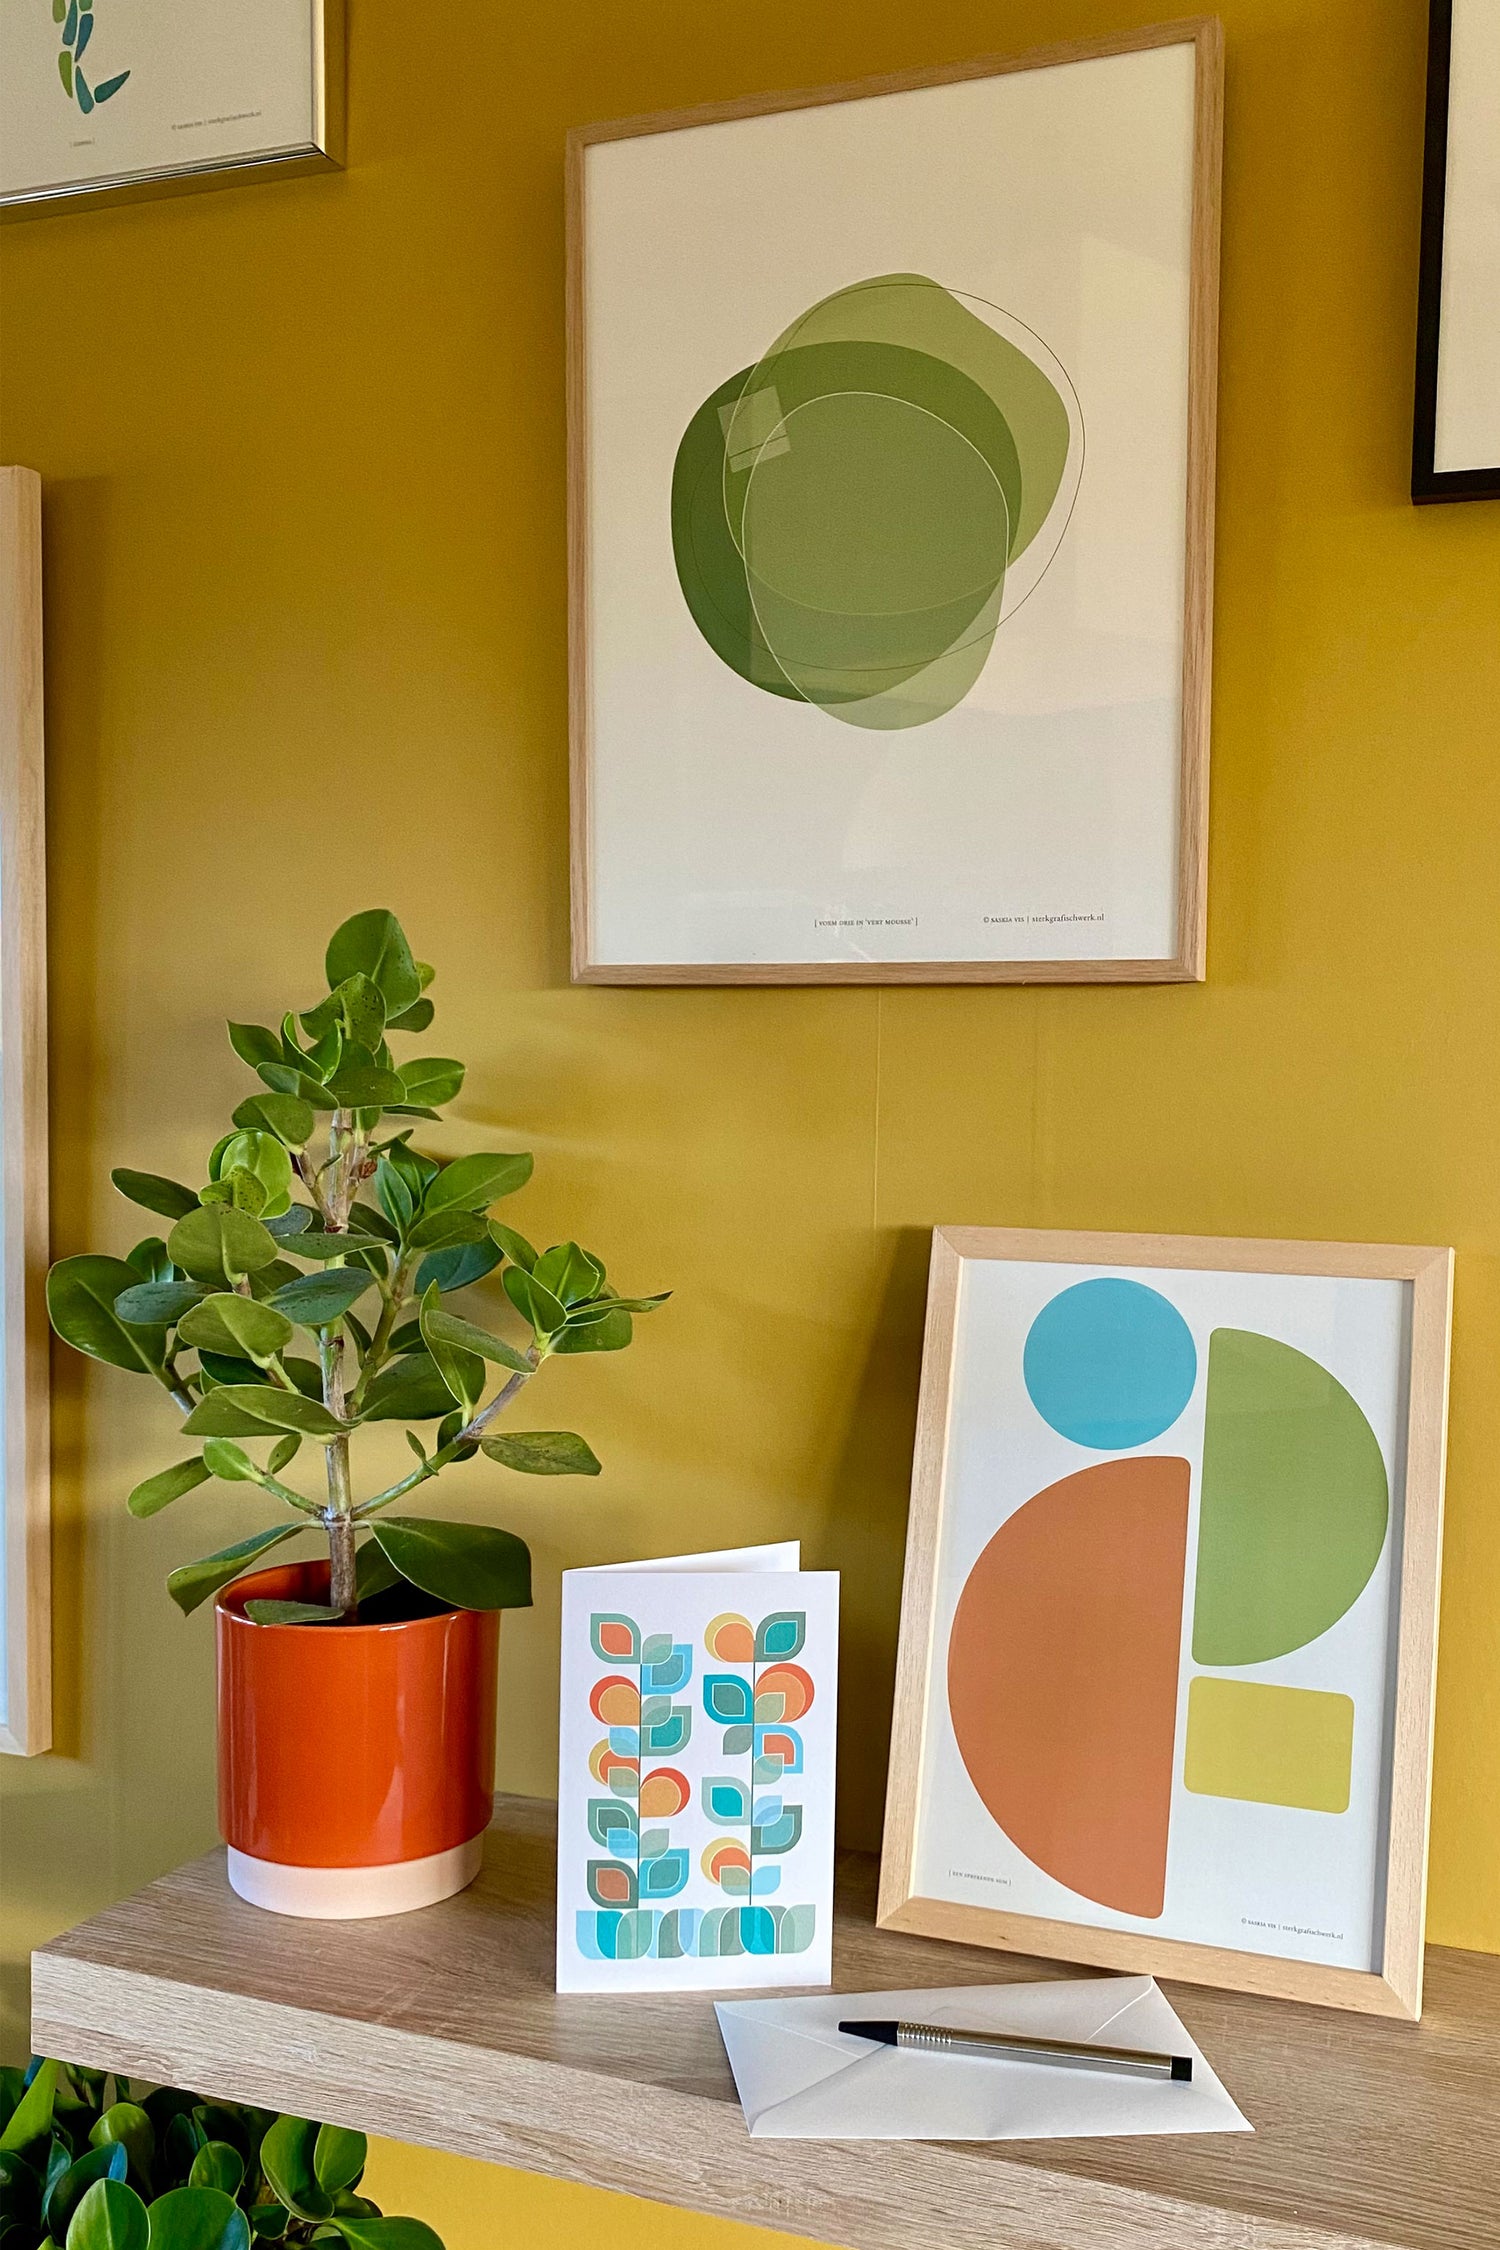 Sfeerfoto met drie producten, poster "Vorm drie in vert mousse" samen met "Een sprekende som" en wenskaart "Vaasje Bloemen 4" en een plant